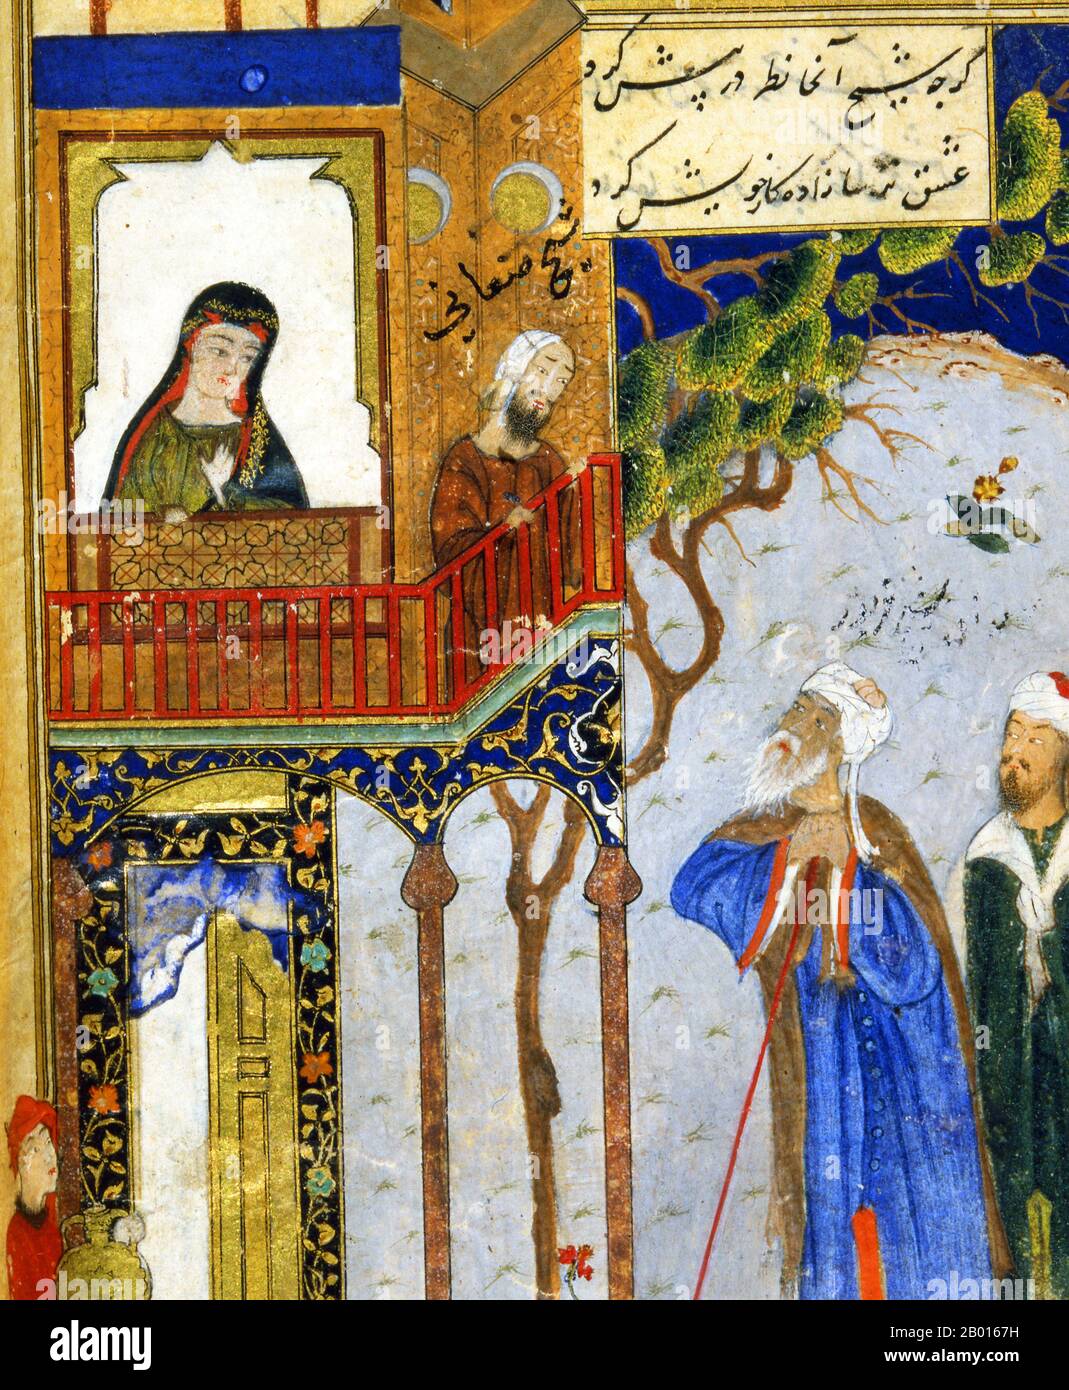 Iran: Ein Miniaturbild aus der 'Vogelkonferenz' von Farid ud-DIN Attar (1145-1221), 15. Jahrhundert. 'Conference of the Birds' ('Mantiq-ut-Tayr') ist ein persisches Gedicht des Sufi-Dichters Fardi ud-Dun Attar. Es ist eine Rahmengeschichte, deren zentrale Figur, ein Wiedehopf, eine Art spiritueller Führer für eine Reihe anderer Vögel ist. Diese Miniatur stammt aus einer Anekdote des Buches, in der es darum geht, wie sich der gläubige Araber Shaykh Sanan in ein christliches Mädchen aus Rum (Byzanz) verliebt. Stockfoto